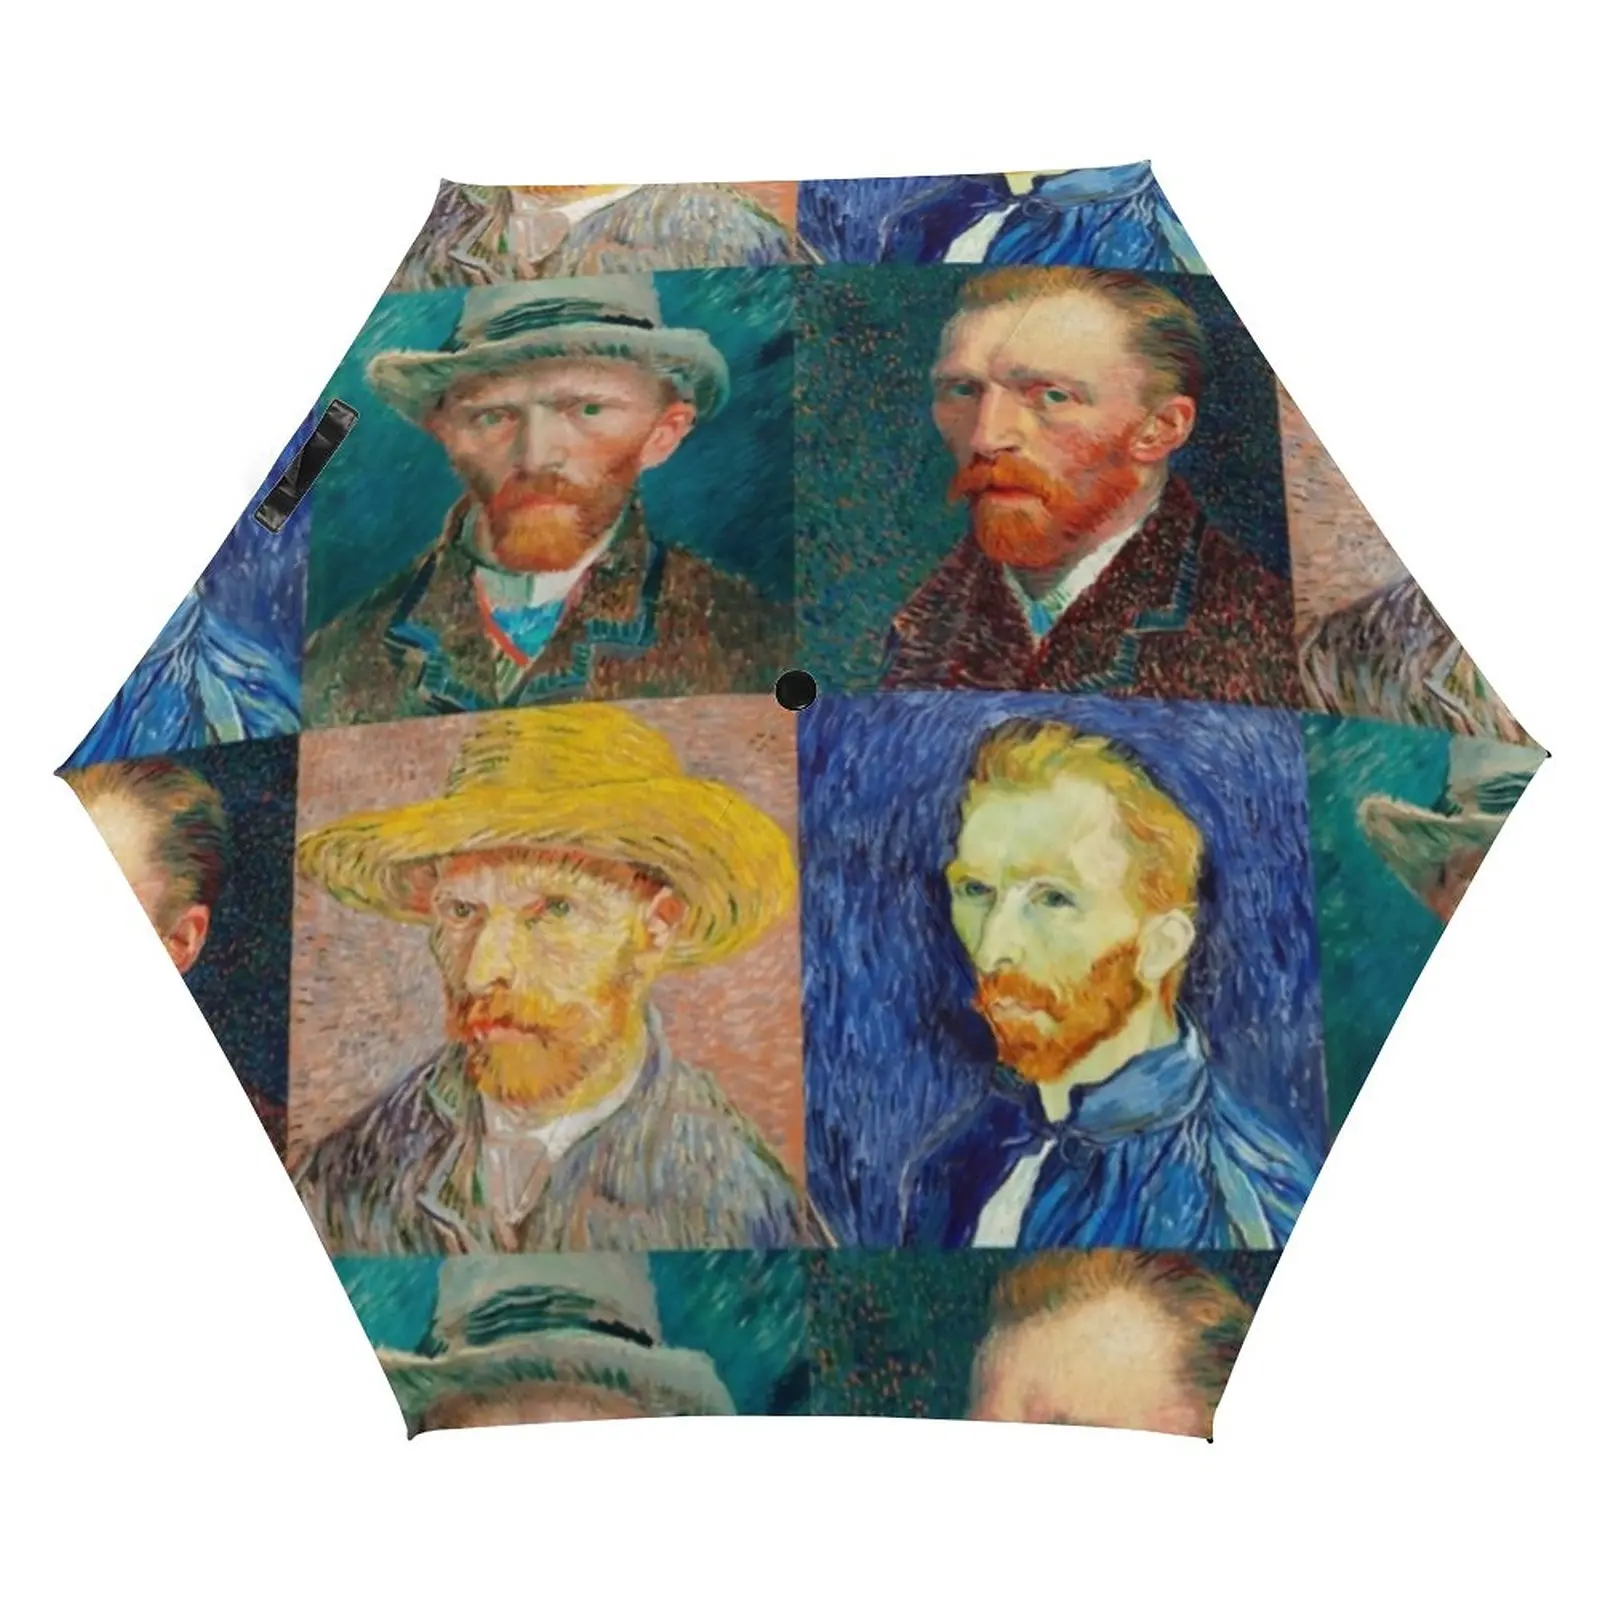 

Van Gogh 5 Fold 6 Ribs Umbrella Self-Portrait Collage UV Protection Pocket Umbrella Black Coat Umbrellas for Men Women